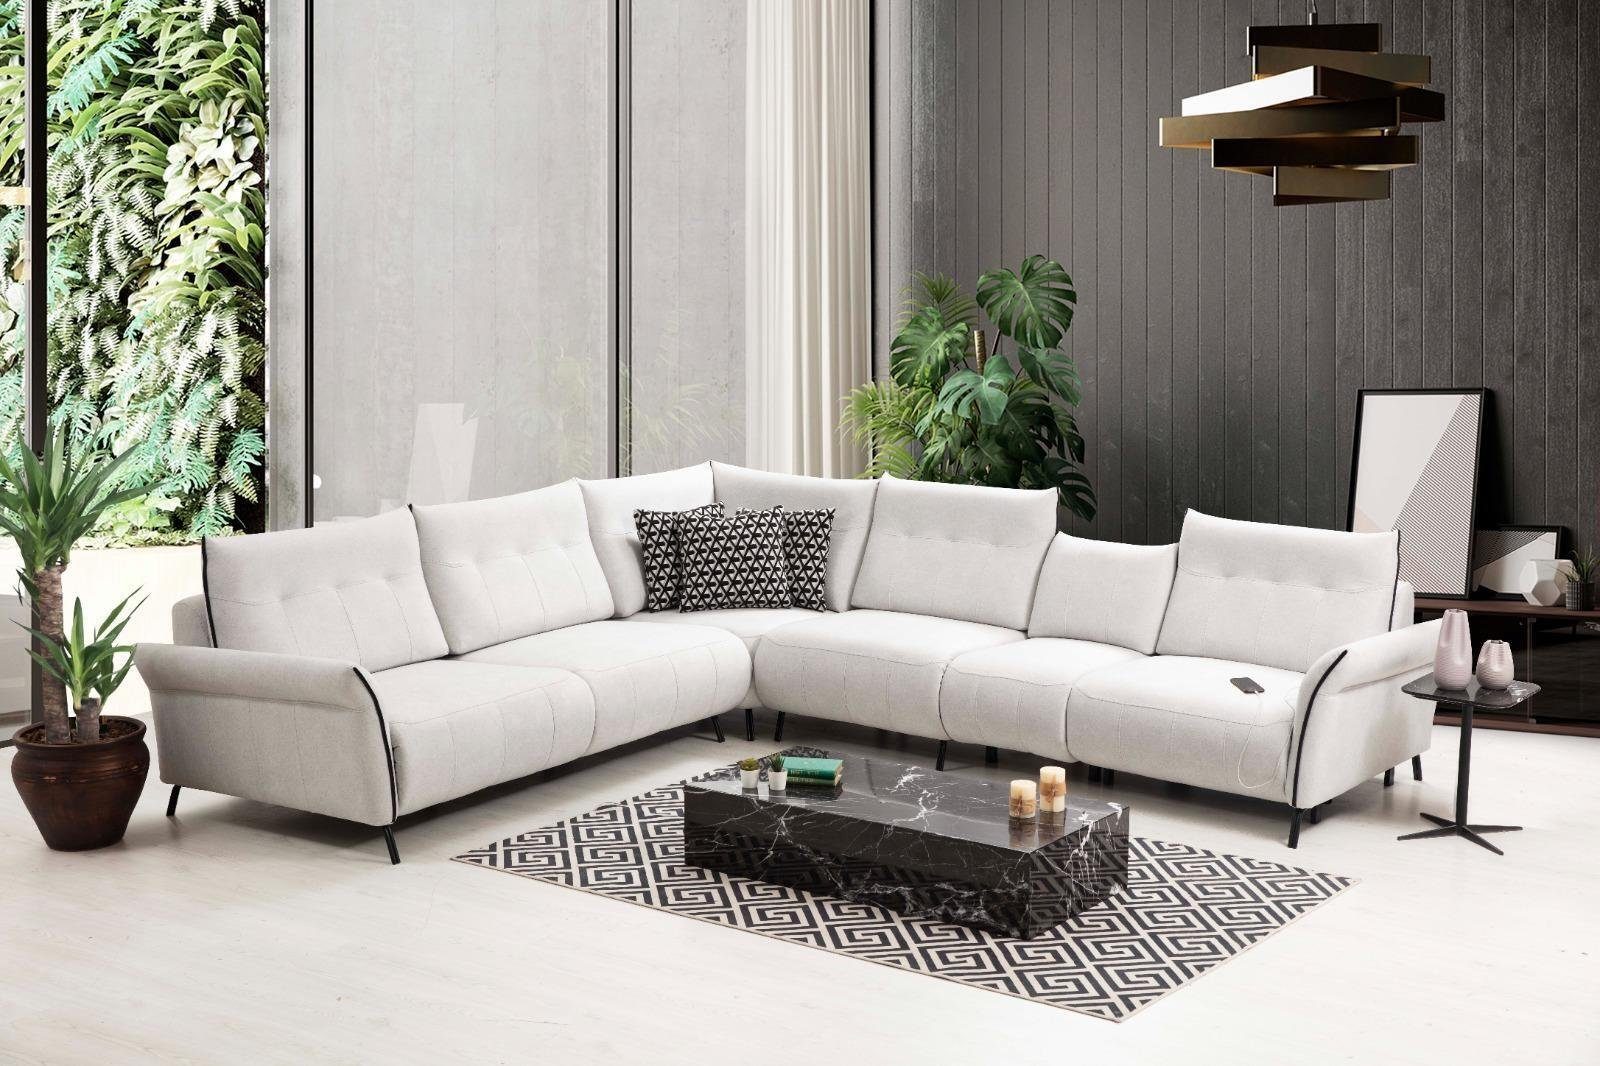 Teile, 3 Wohnzimmer Polster Weiß in Made L-Form Möbel, Ecksofa Couch Textil Sofa Ecksofa Europa Modern JVmoebel